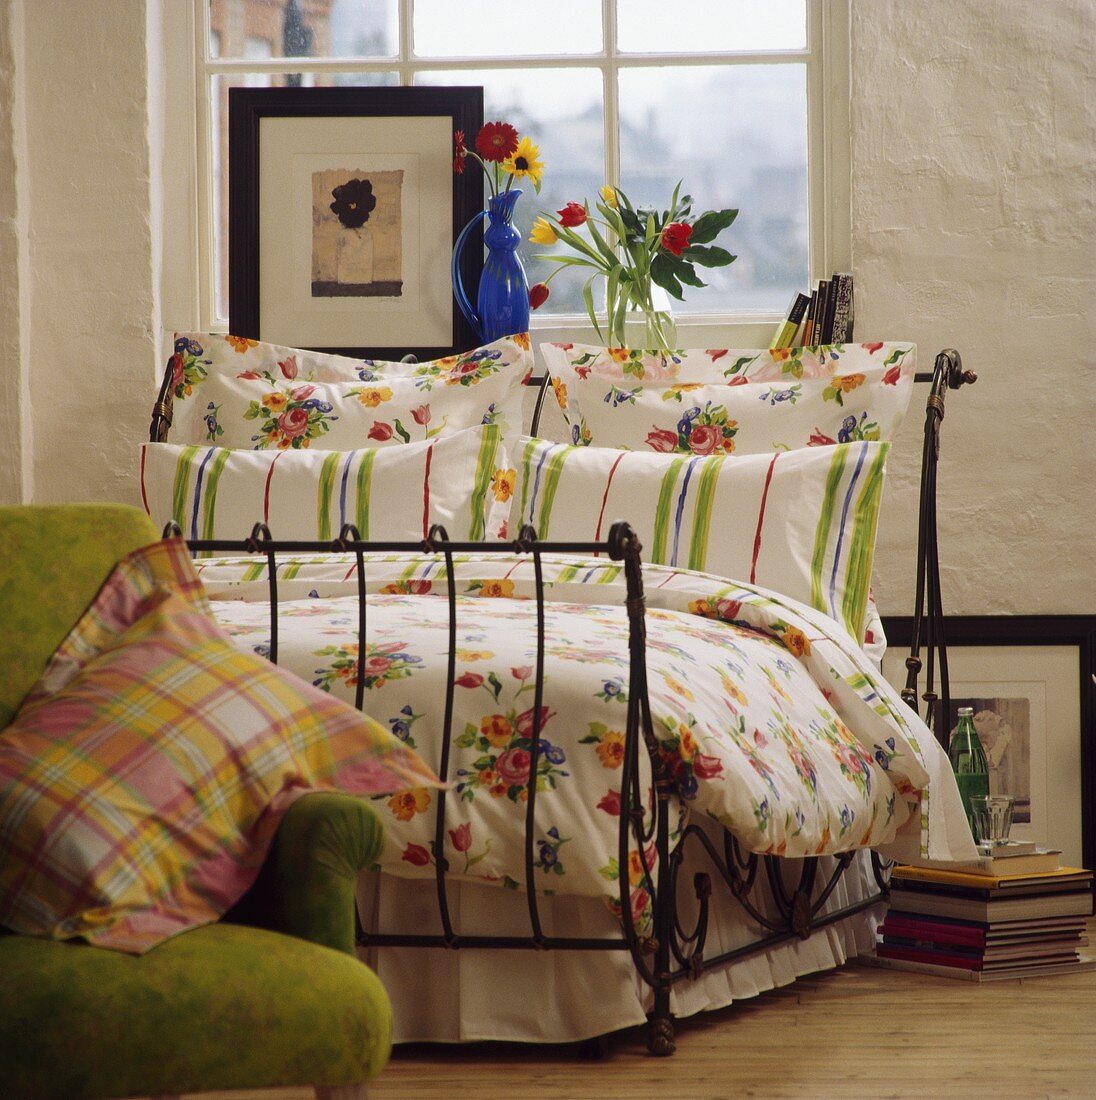 Gestreifte und geblümte Kissen mit floralem Muster auf schmiedeeisernem, antiken Bett vor Fenster mit Bild und Blumen auf Fensterbank